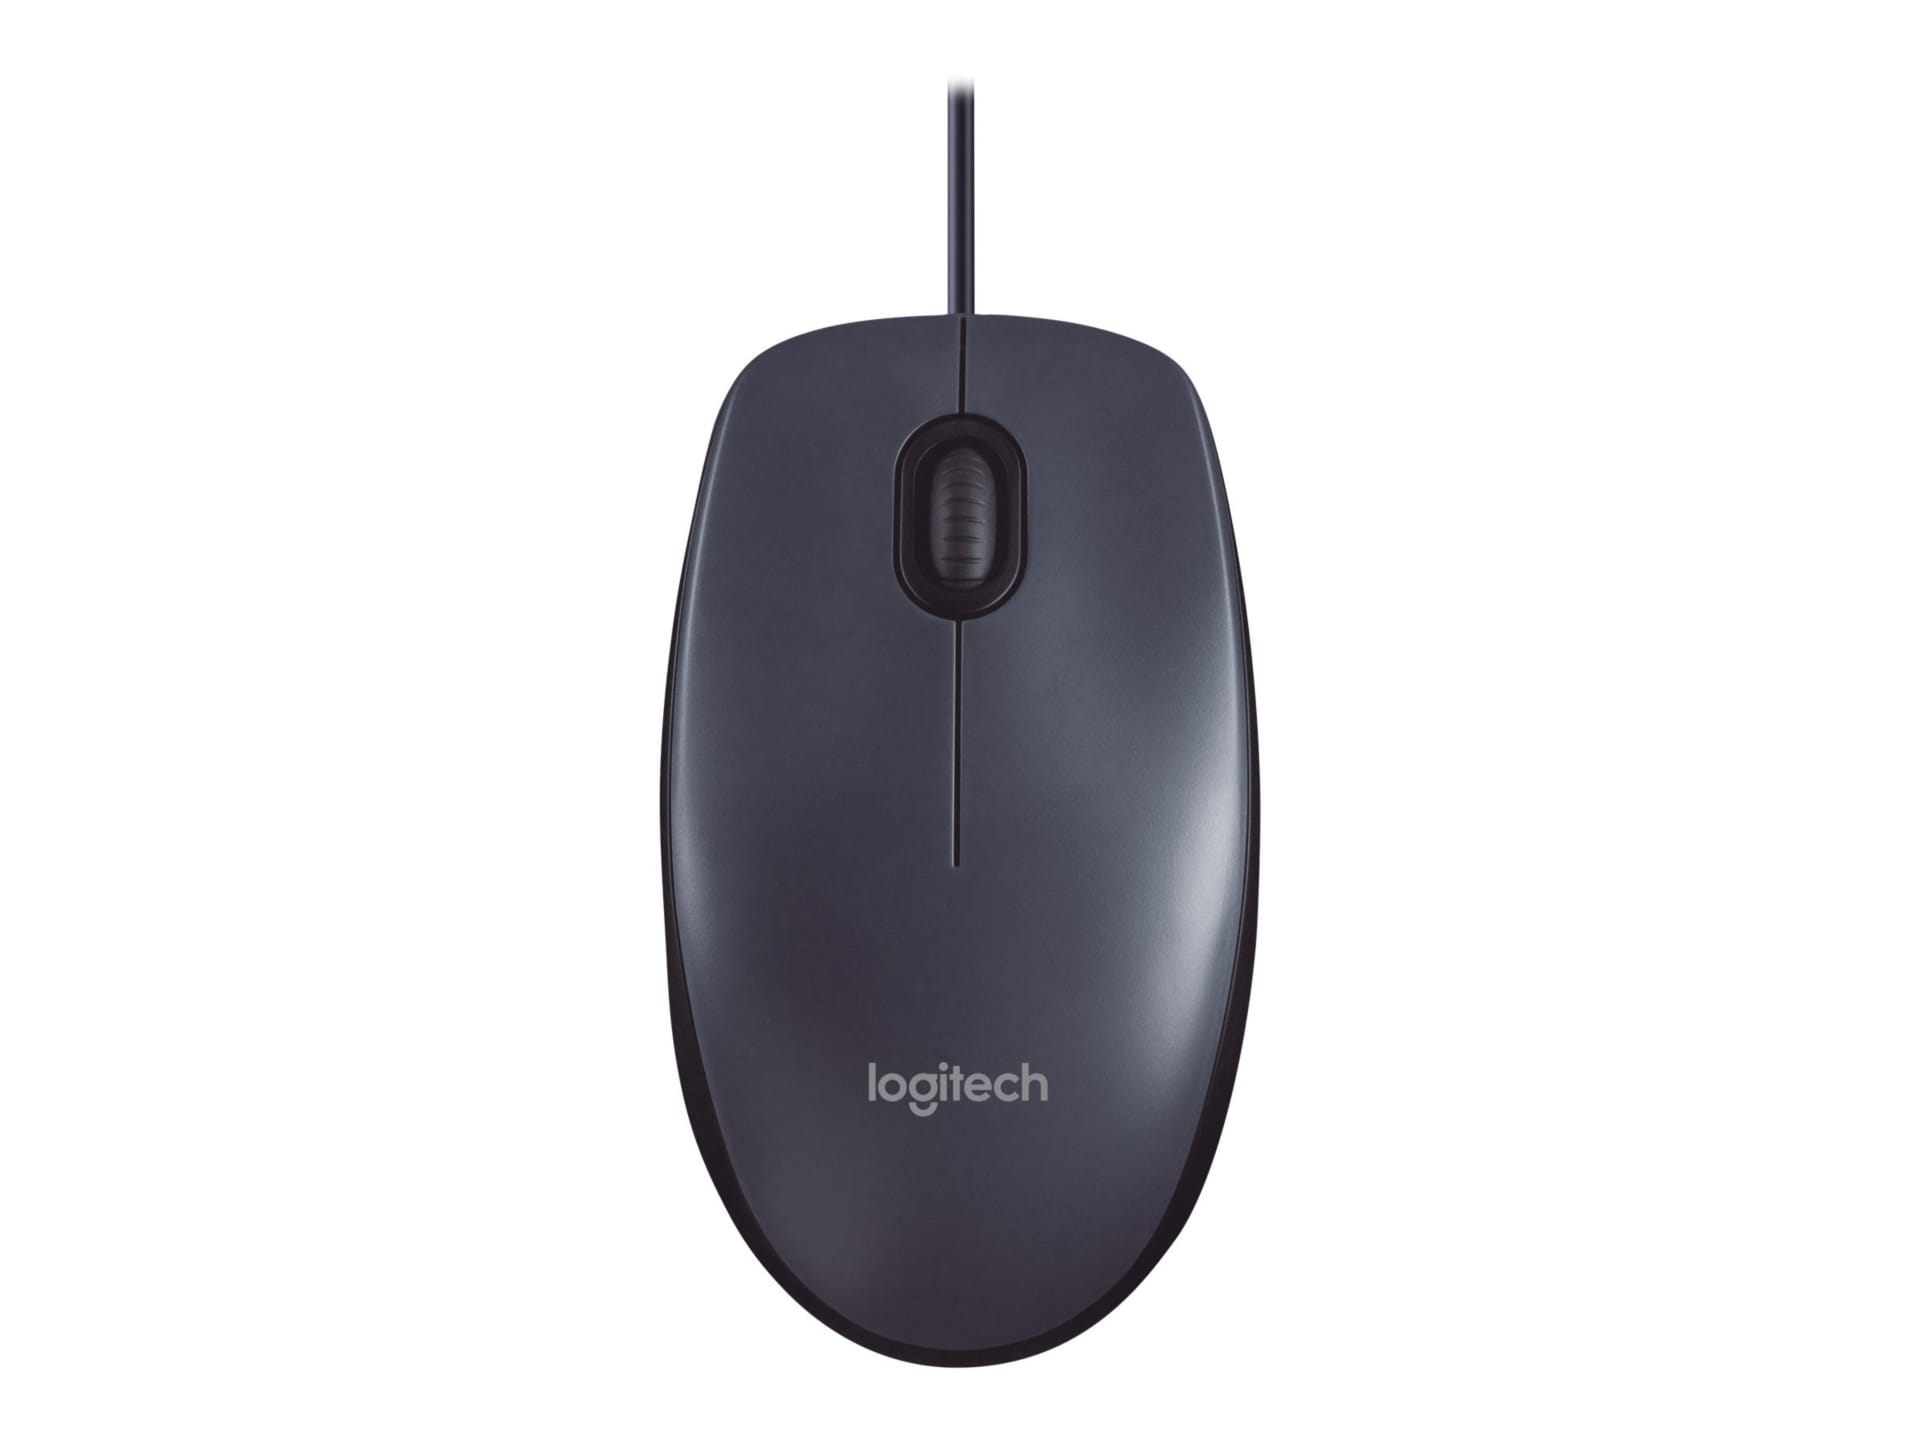 Logitech B100 Optical USB Mouse (Noir) - Souris PC - Garantie 3